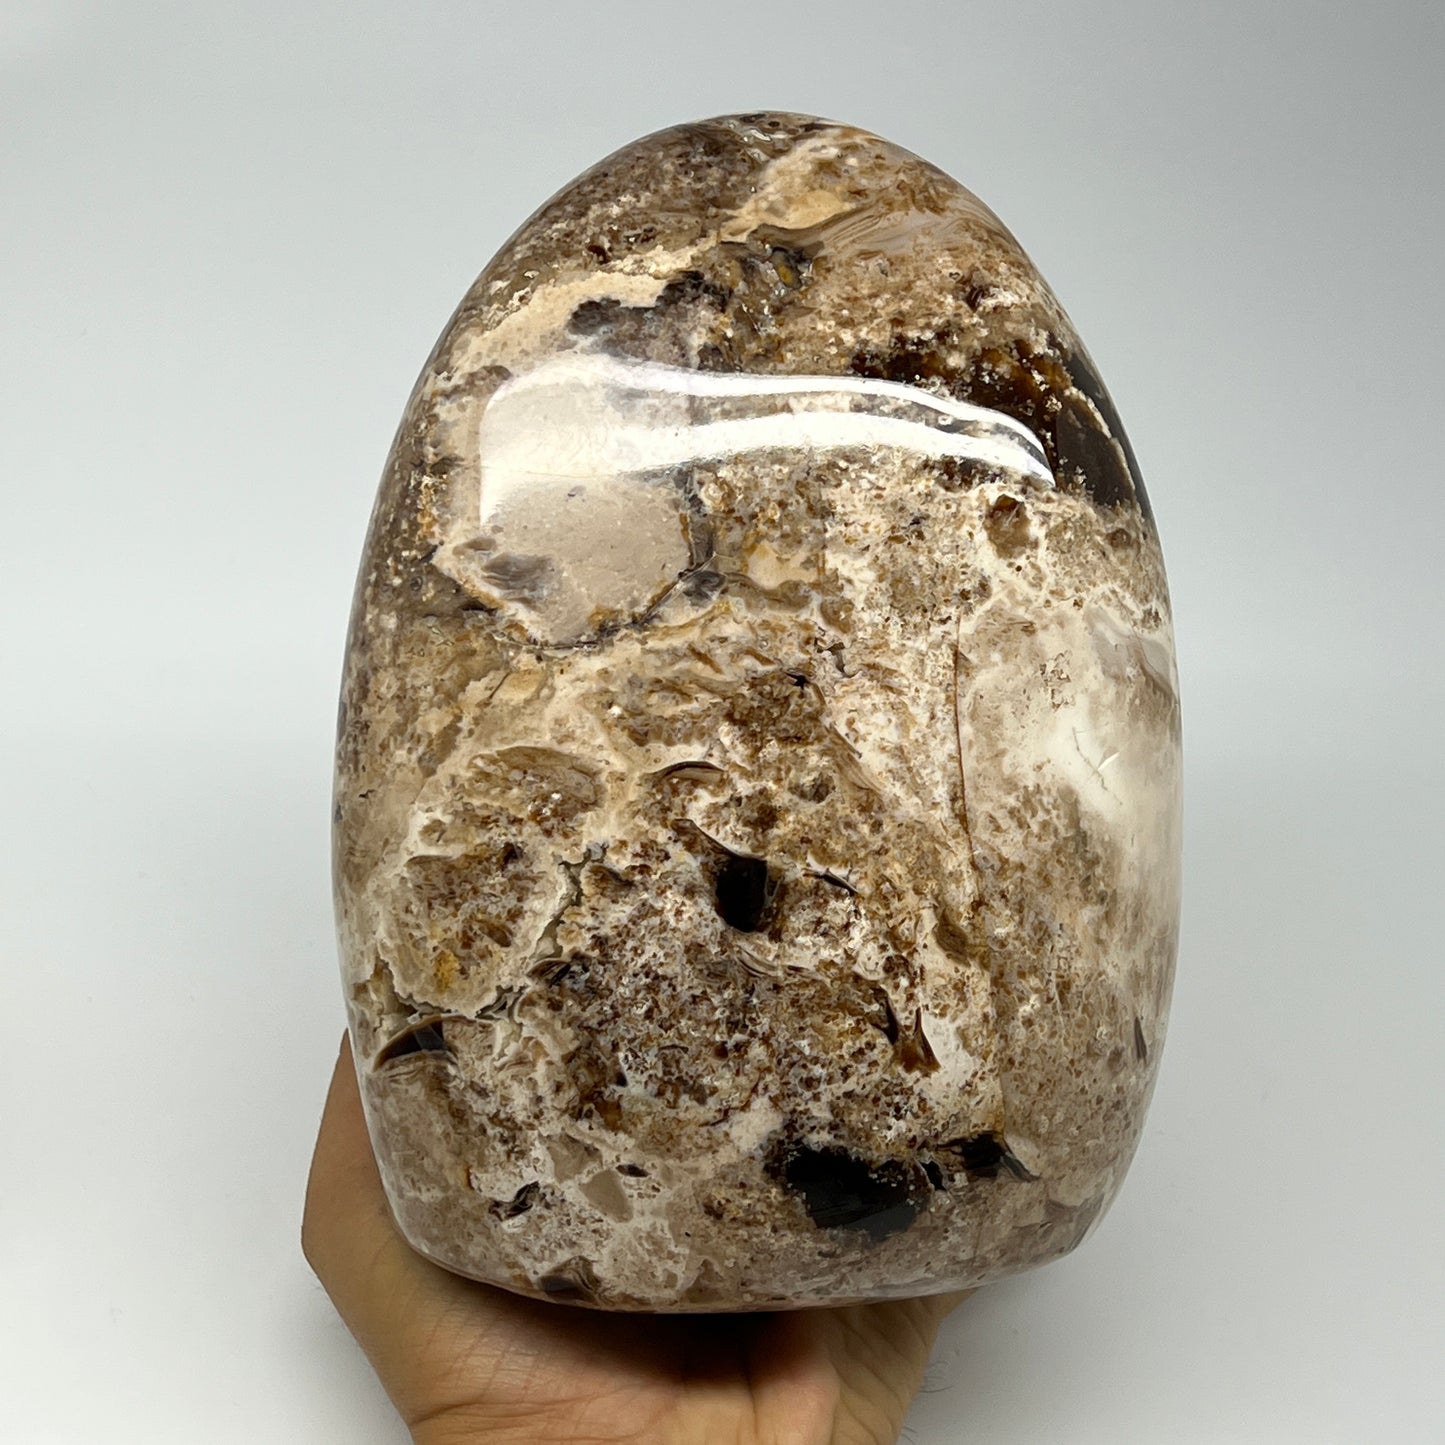 2565g,7"x5.2"x3.6" Black Opal Freeform Polished Gemstone @Madagascar,B21109